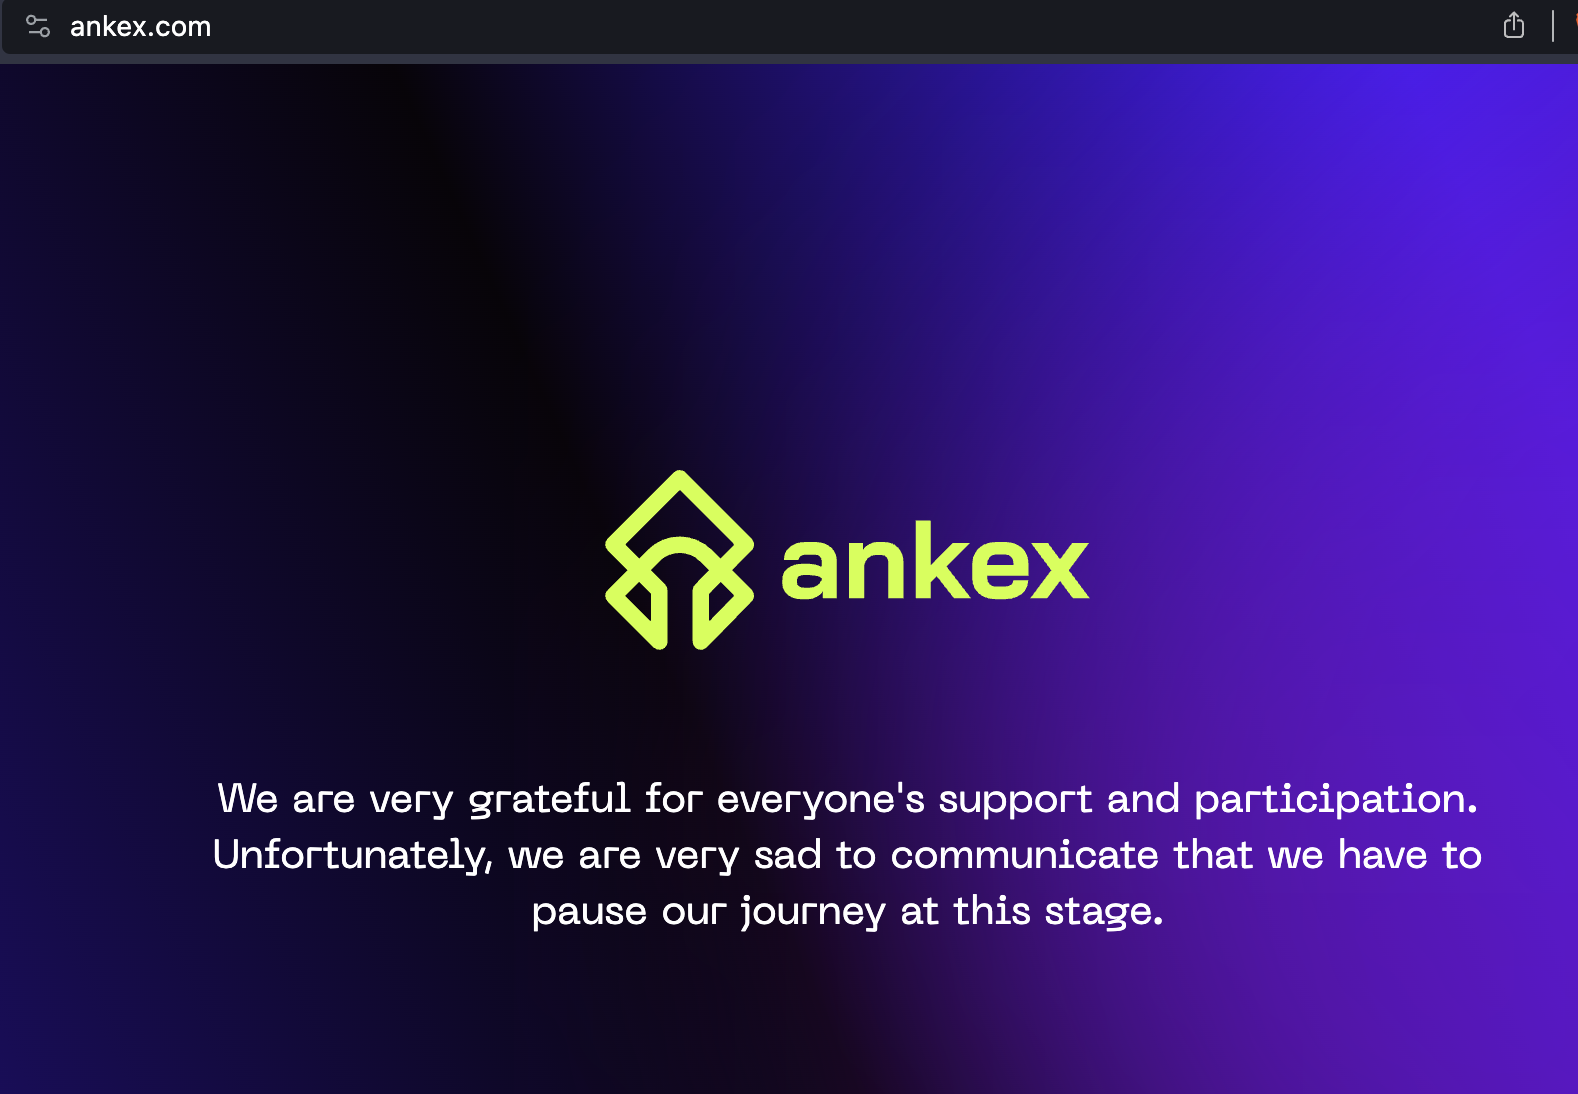 El sitio web oficial del exchange Ankex informa a los espectadores sobre la pausa.